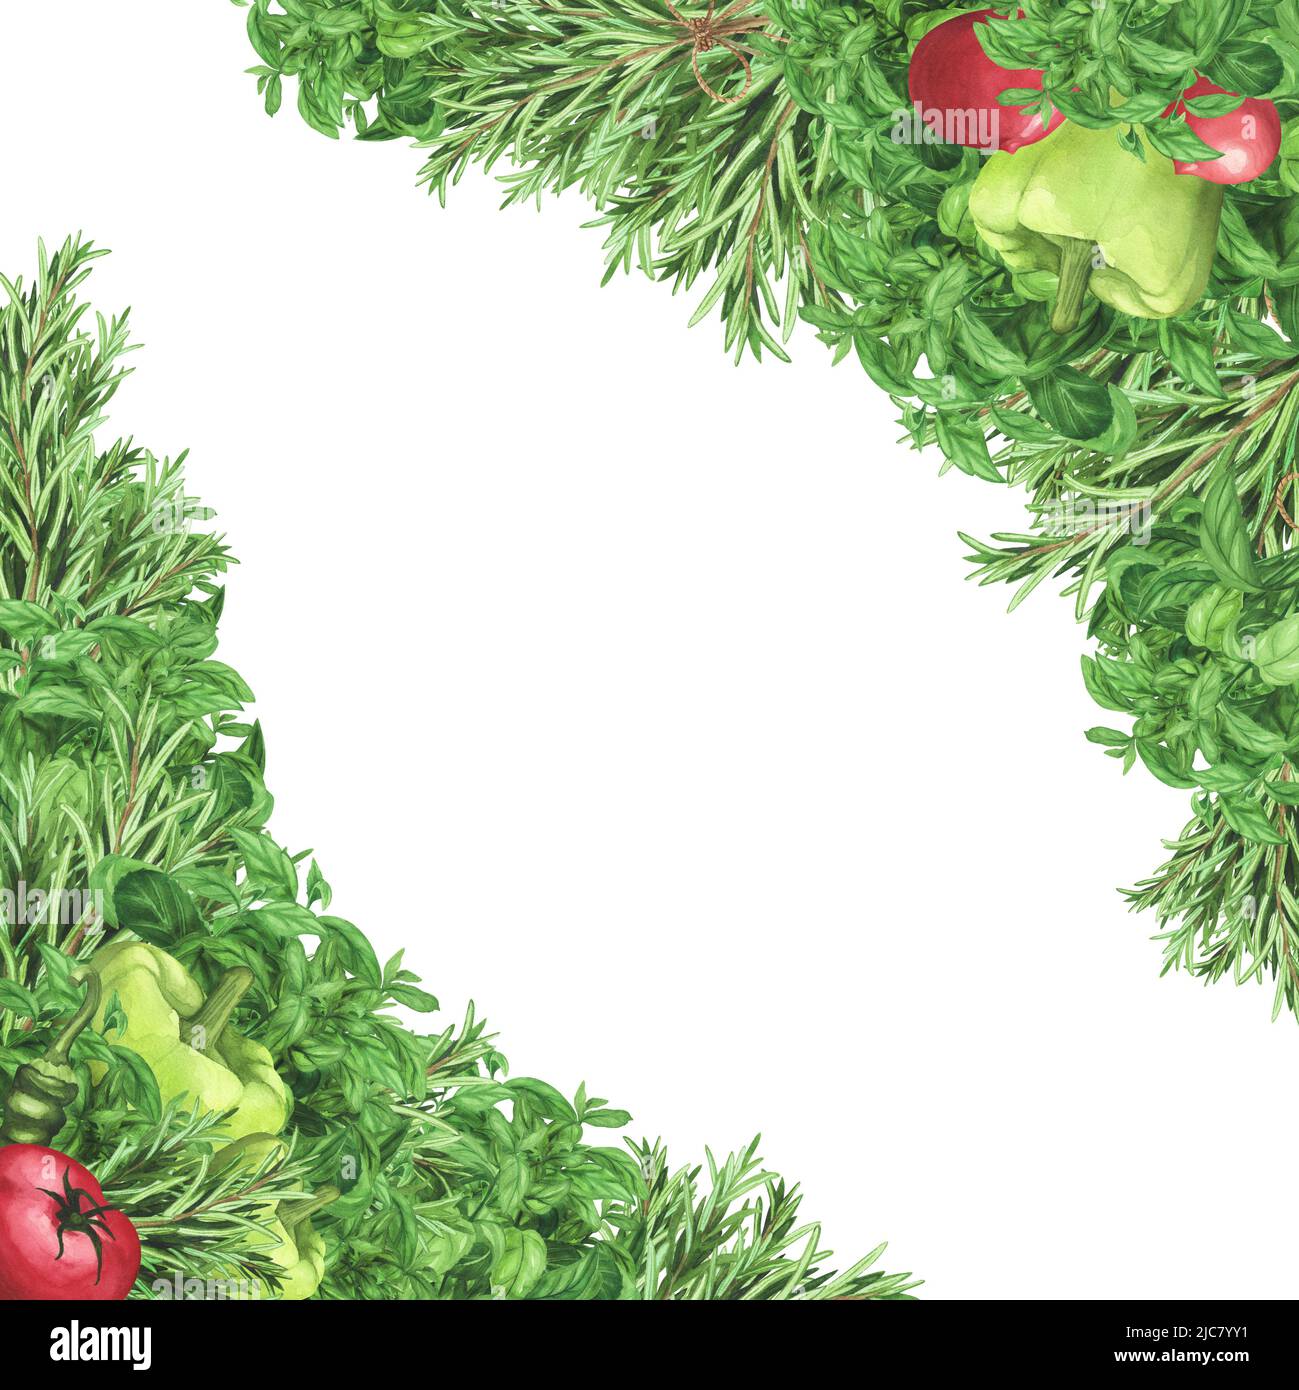 Bordare con basilico alle erbe fresche, rosmarino, pomodori maturi, peperoncino. Watercolor cornice quadrata disegnata a mano. Illustrazione per menu, imballaggio, biologico pro Foto Stock